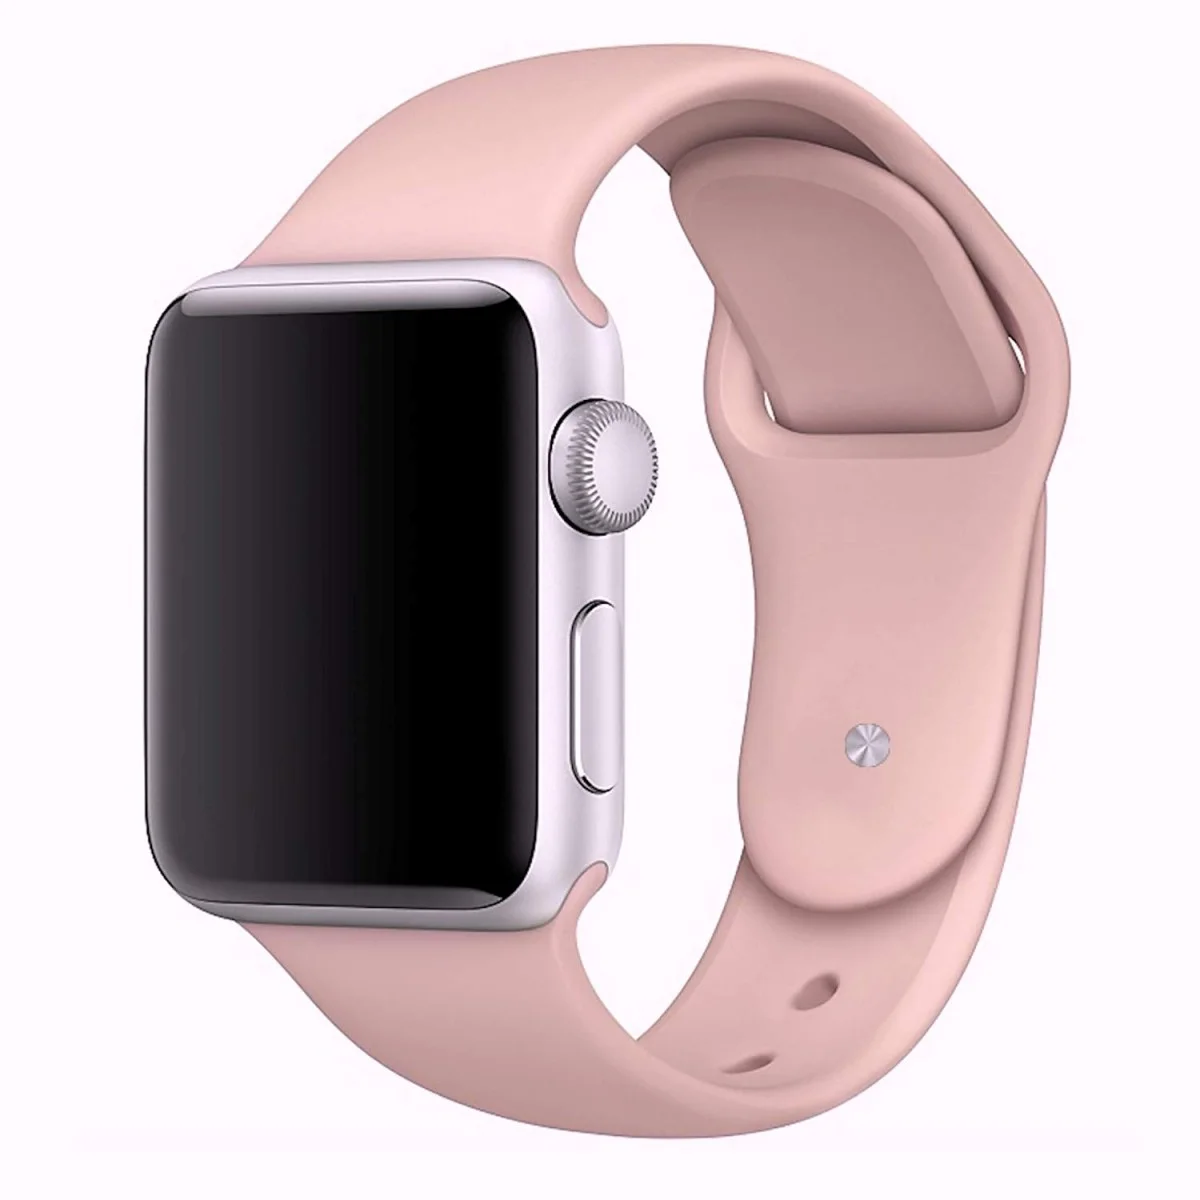 Řemínek iMore SmoothBand pro Apple Watch Series 1/2/3 (38mm) - Pískově růžový